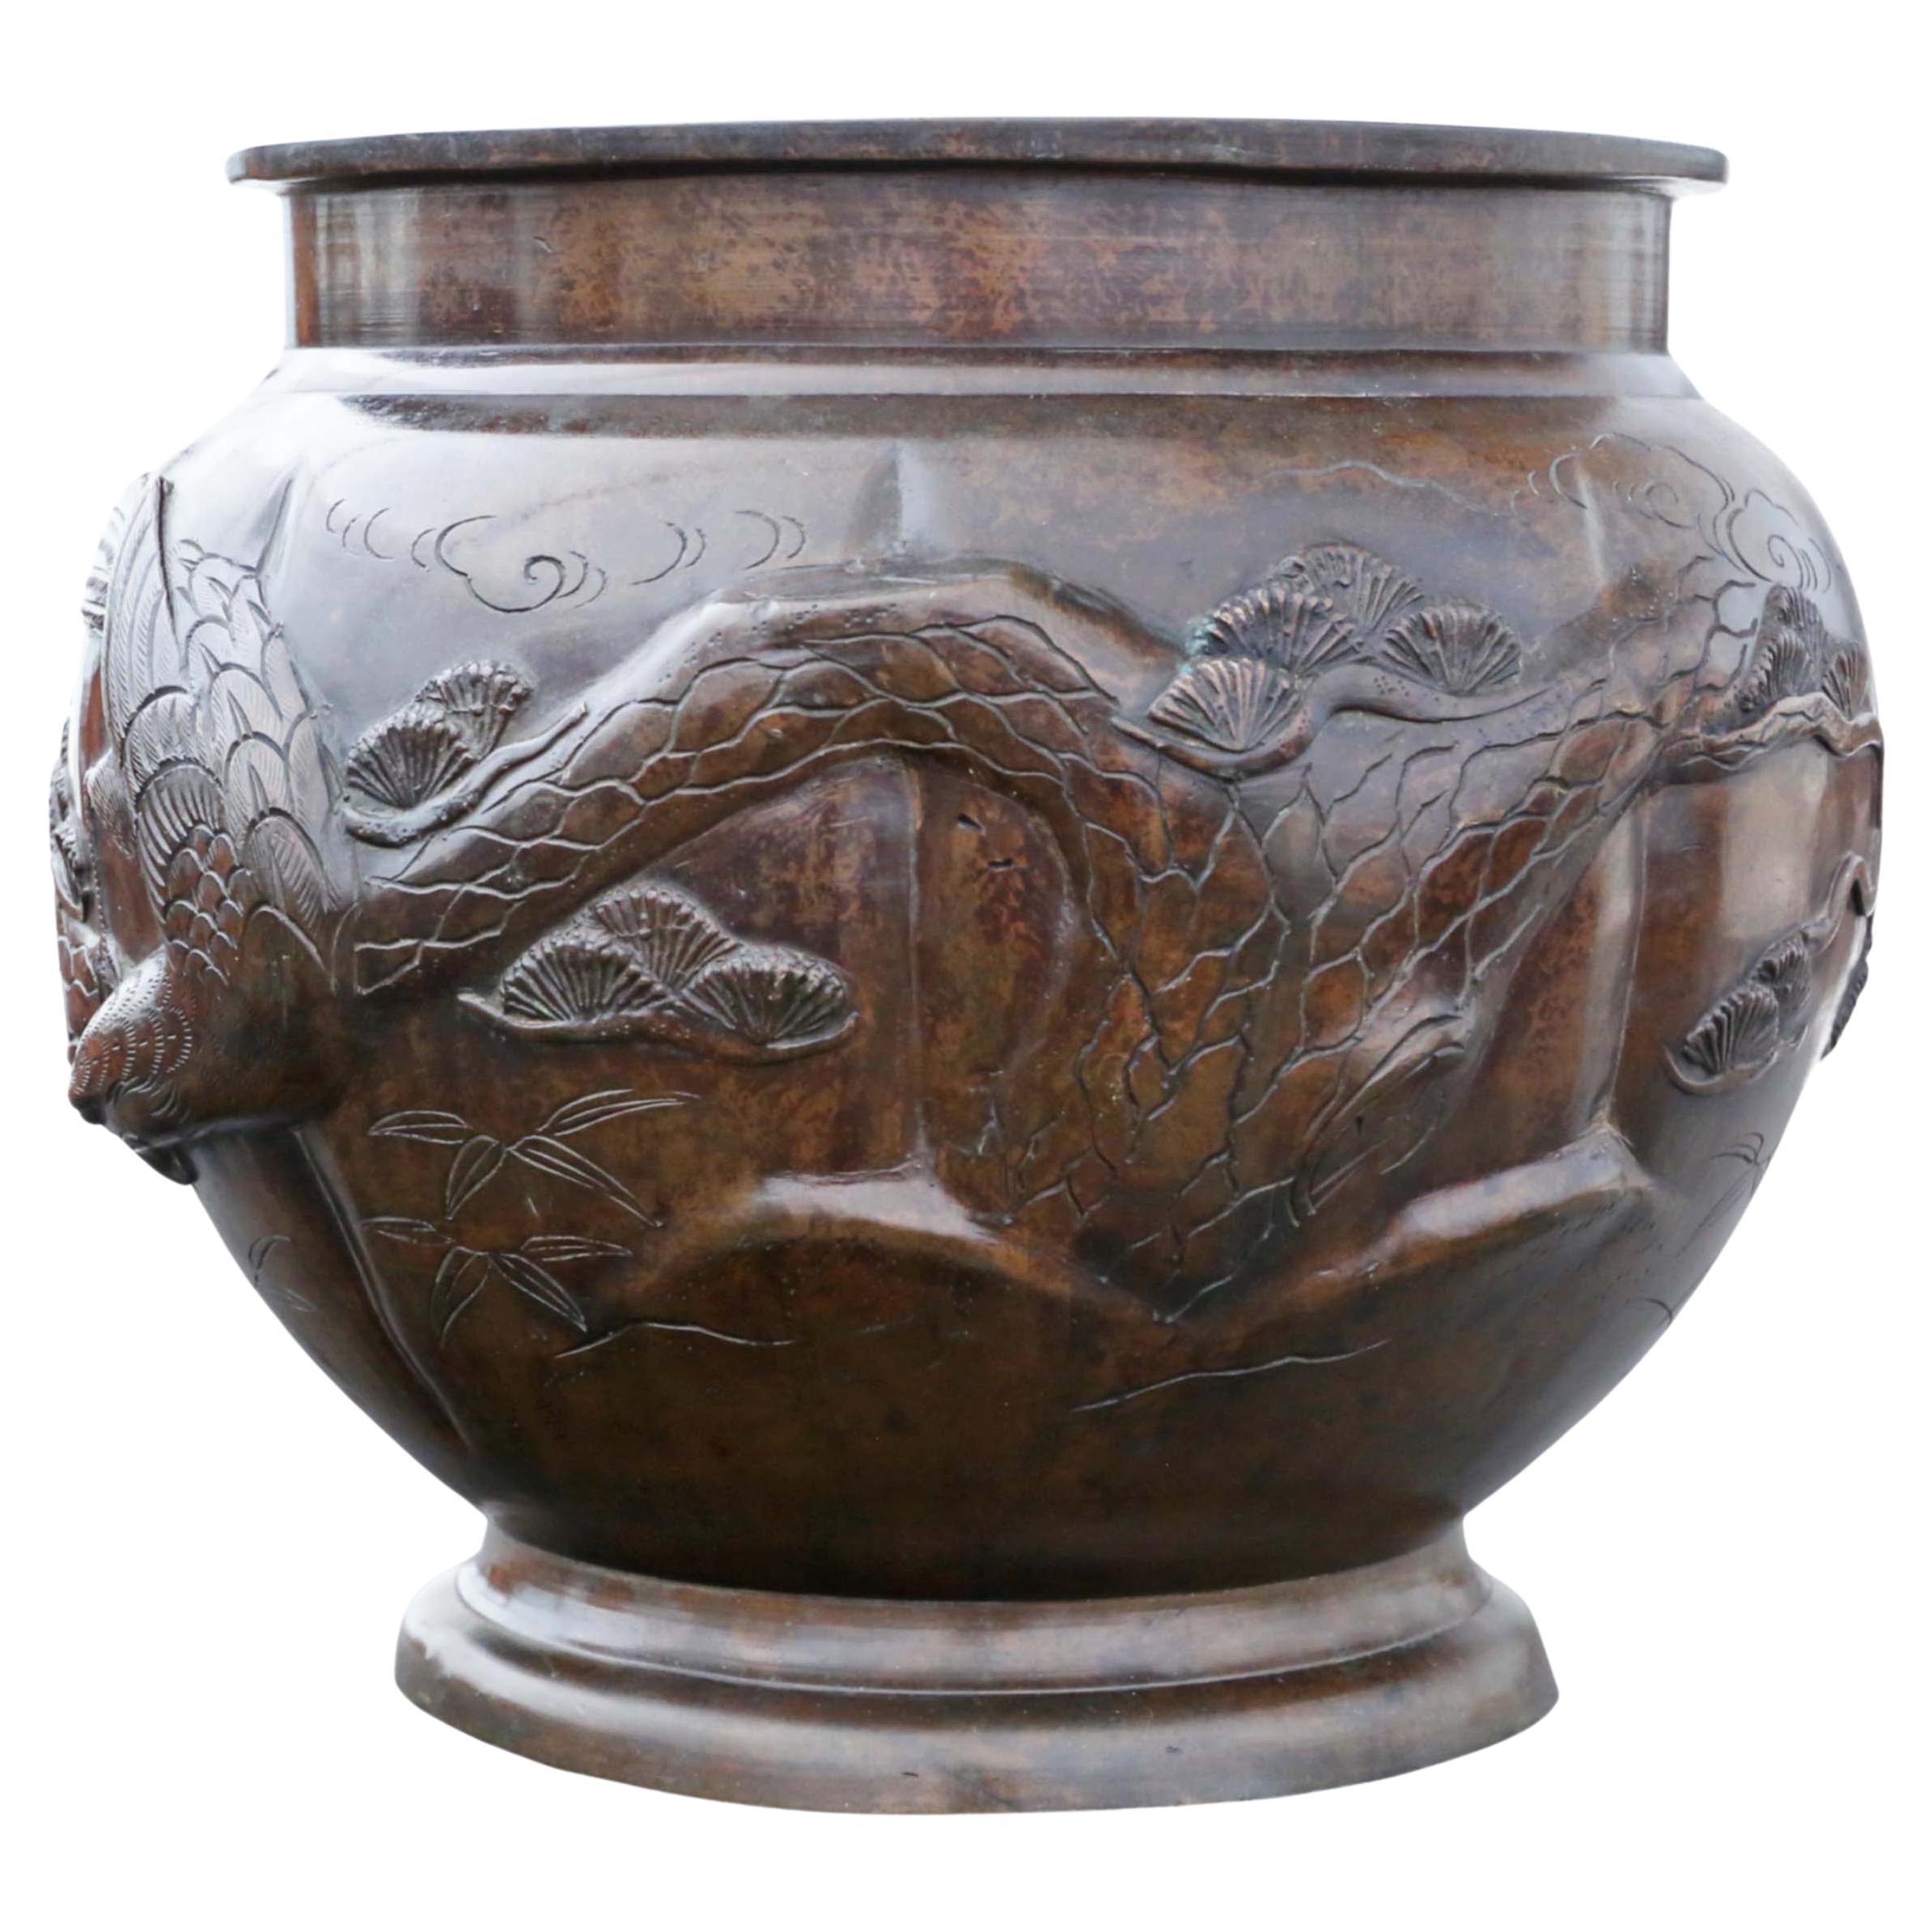 Japanese Bronze Jardinière Planter Bowl Pot- 19th Century Meiji Period, Antique